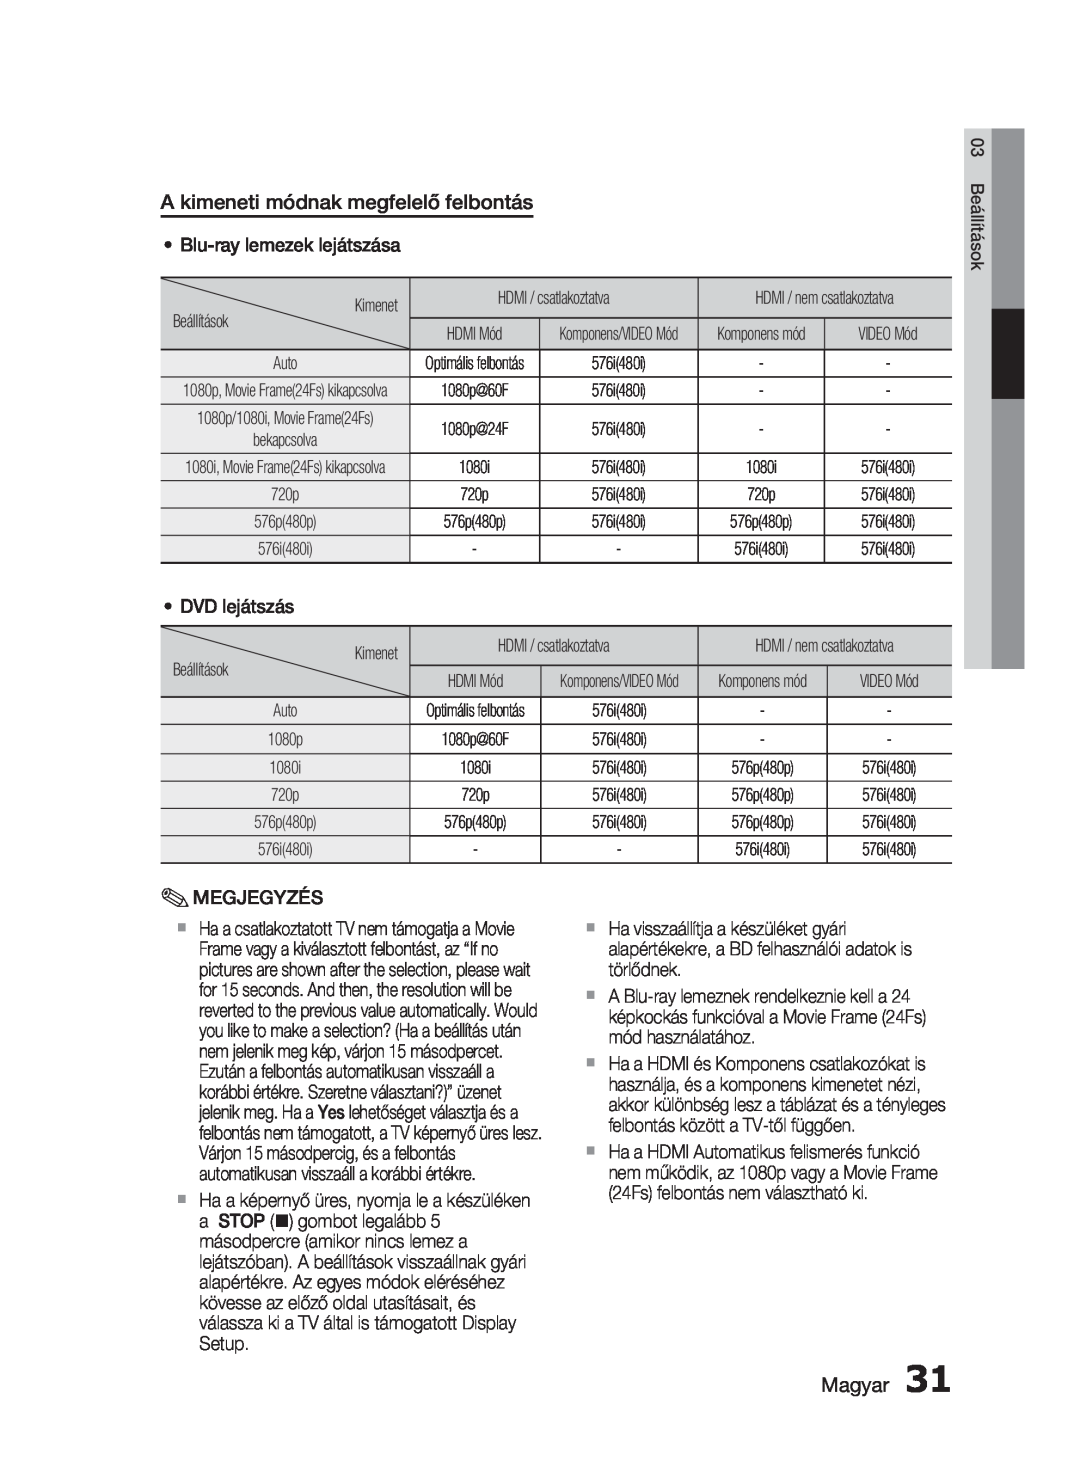 Samsung HT-C5900/XEE, HT-C5900/XEF manual A kimeneti módnak megfelelő felbontás, Magyar 